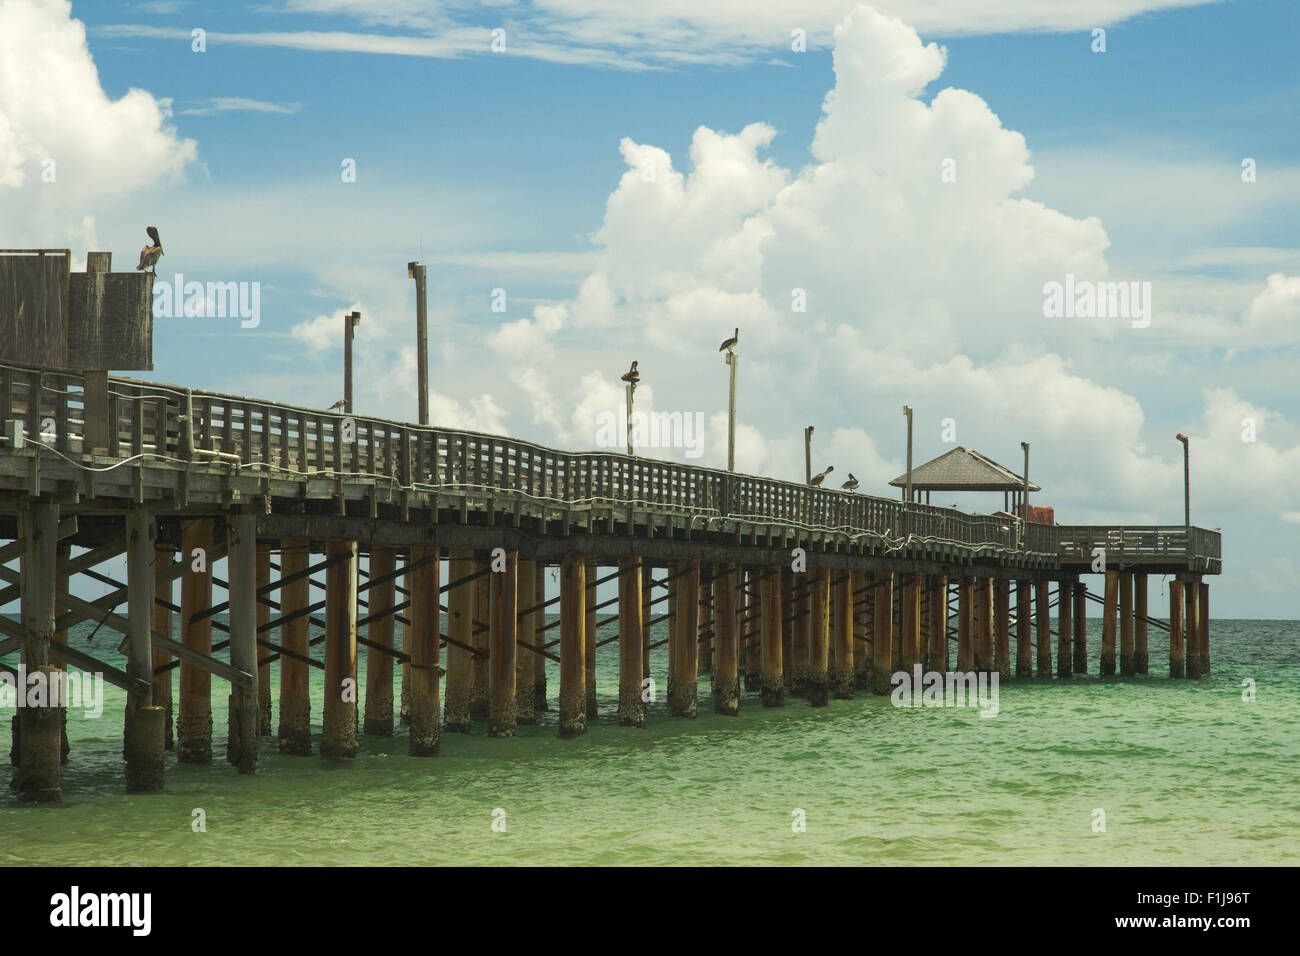 Pier in the Atlantic Ocean, Miami, Miami-Dade County, Florida, USA Stock Photo